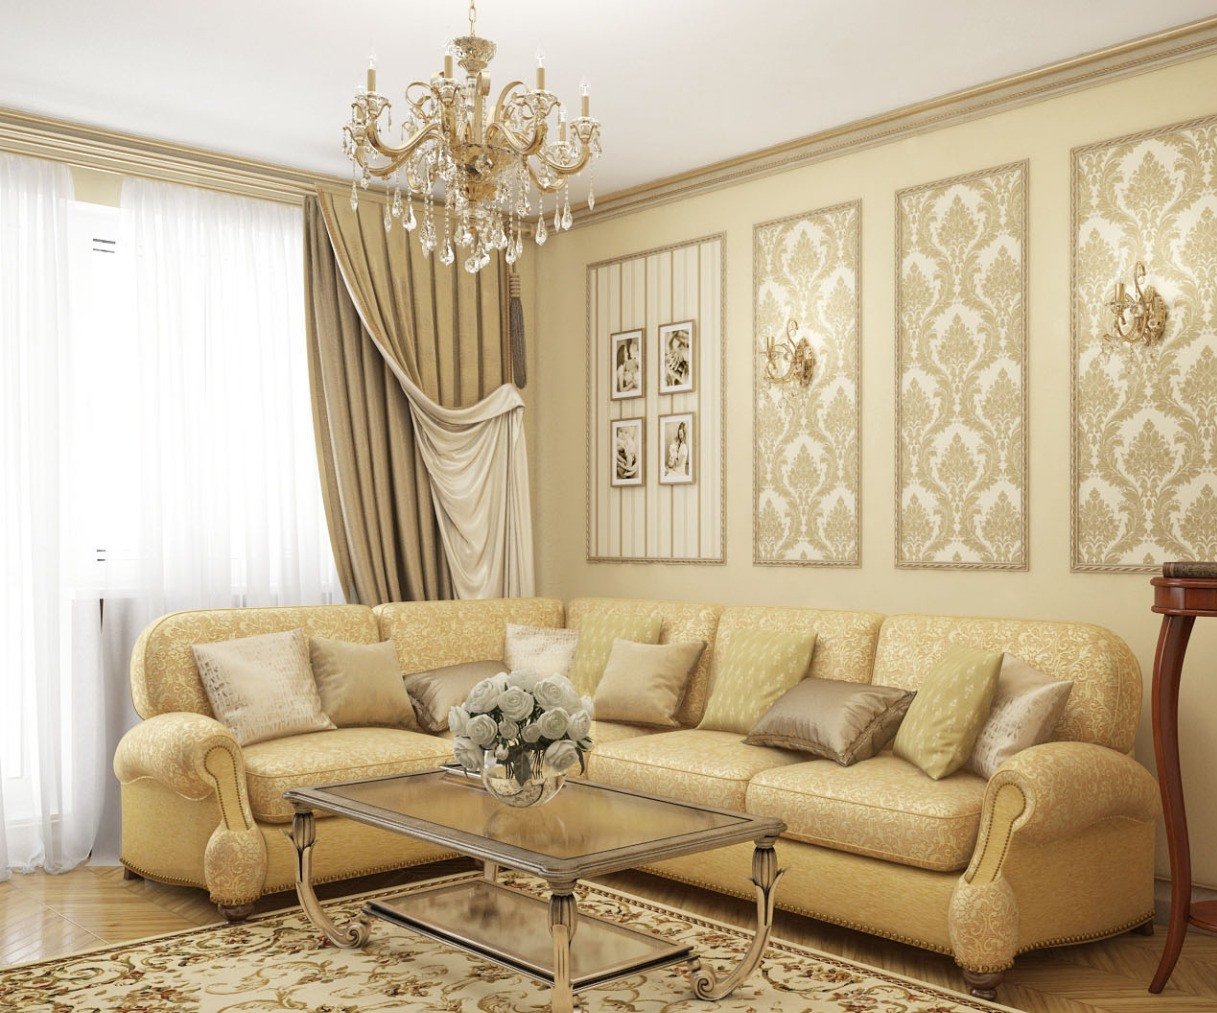 Behang in de woonkamer: de beste combinaties van kleuren en stijl in het interieur van de kamer, fotovoorbeelden